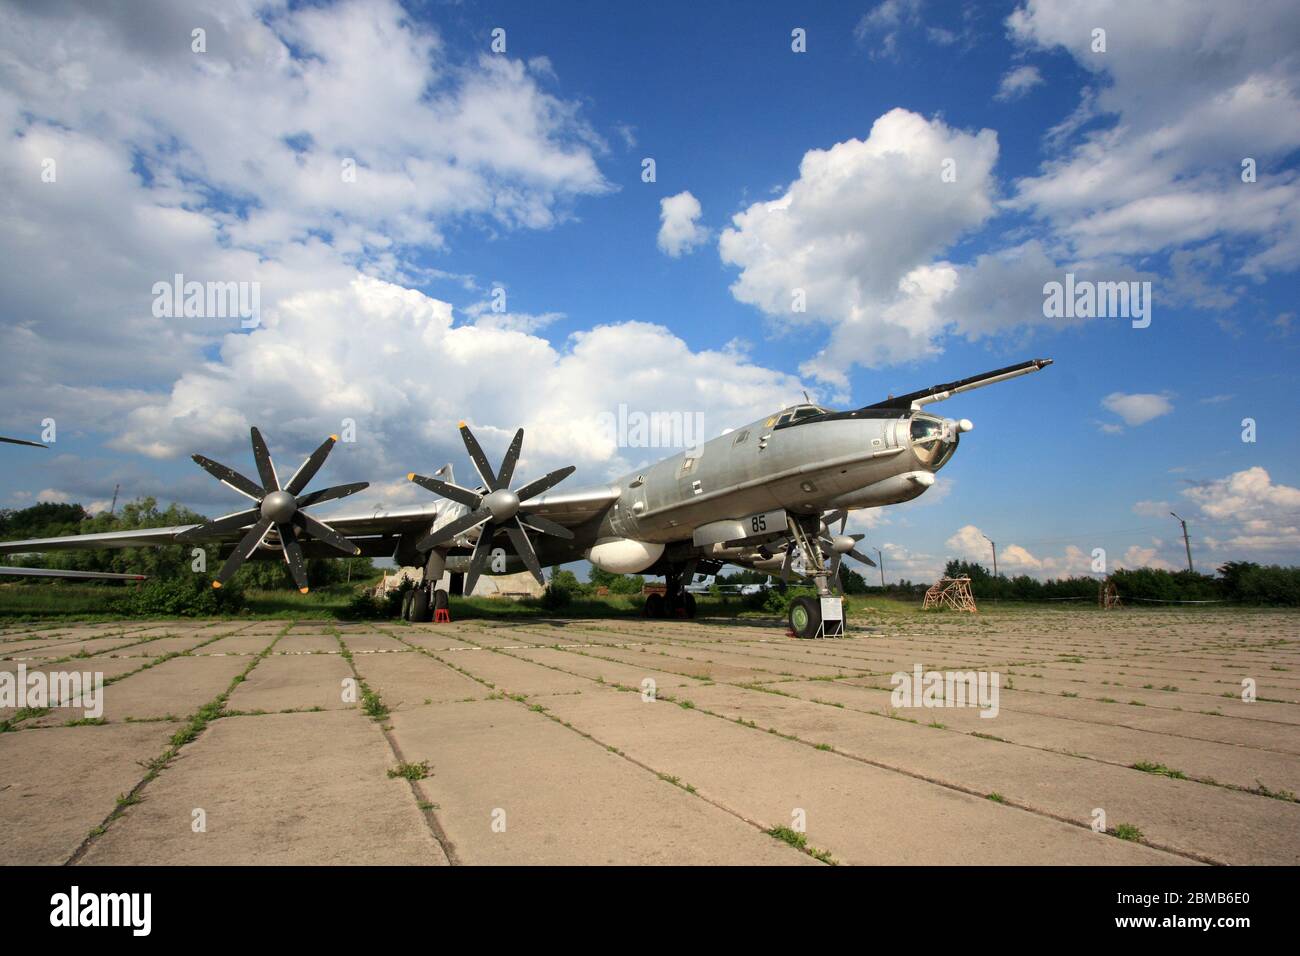 Vista esterna di un aereo da ricognizione marittima e anti-sottomarino Tupolev Tu-142 "Bear" presso il Museo dell'aviazione statale di Zhulyany in Ucraina Foto Stock